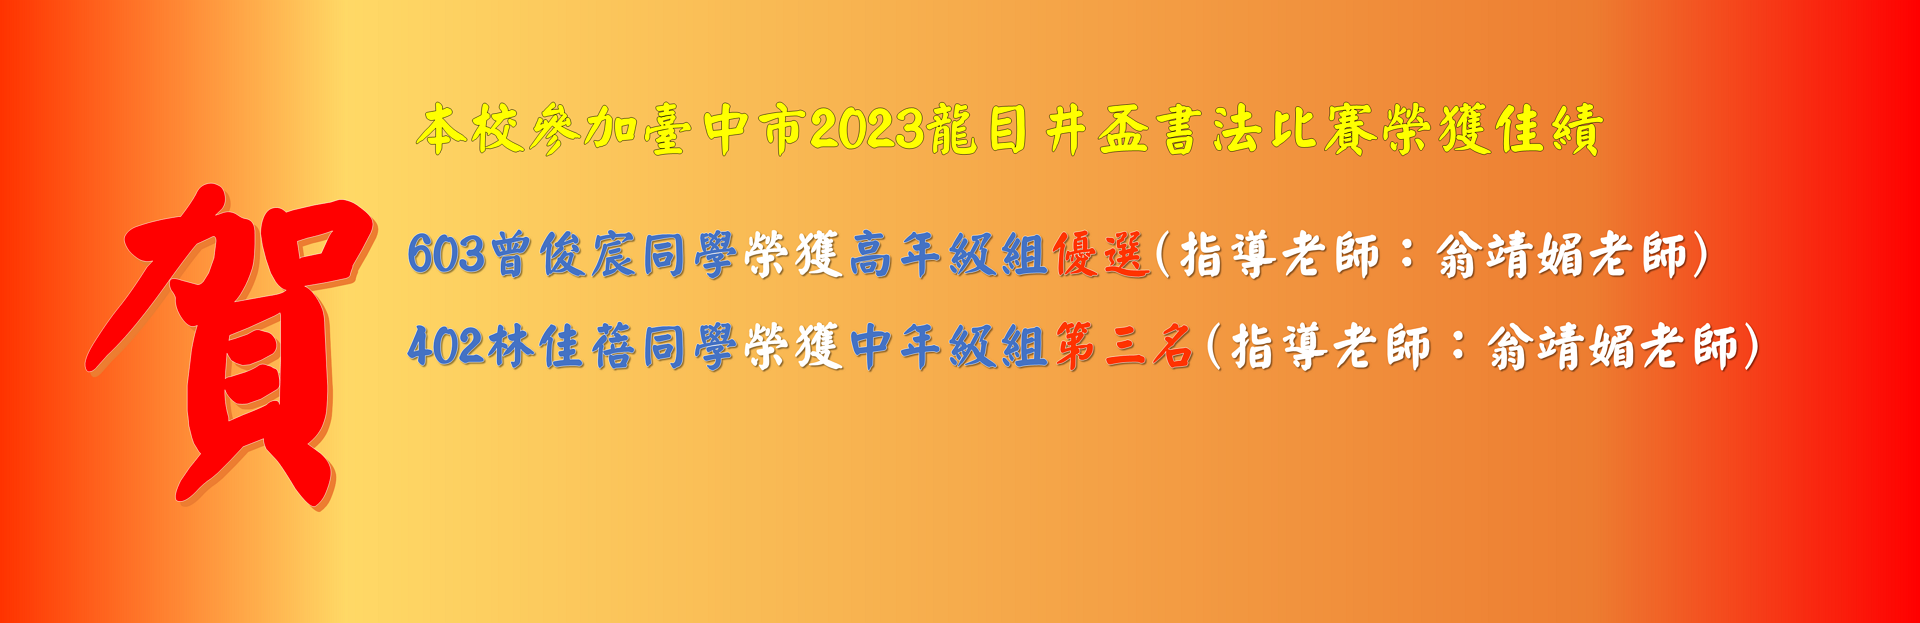 參加臺中市2023龍井盃書法比賽榮獲佳績